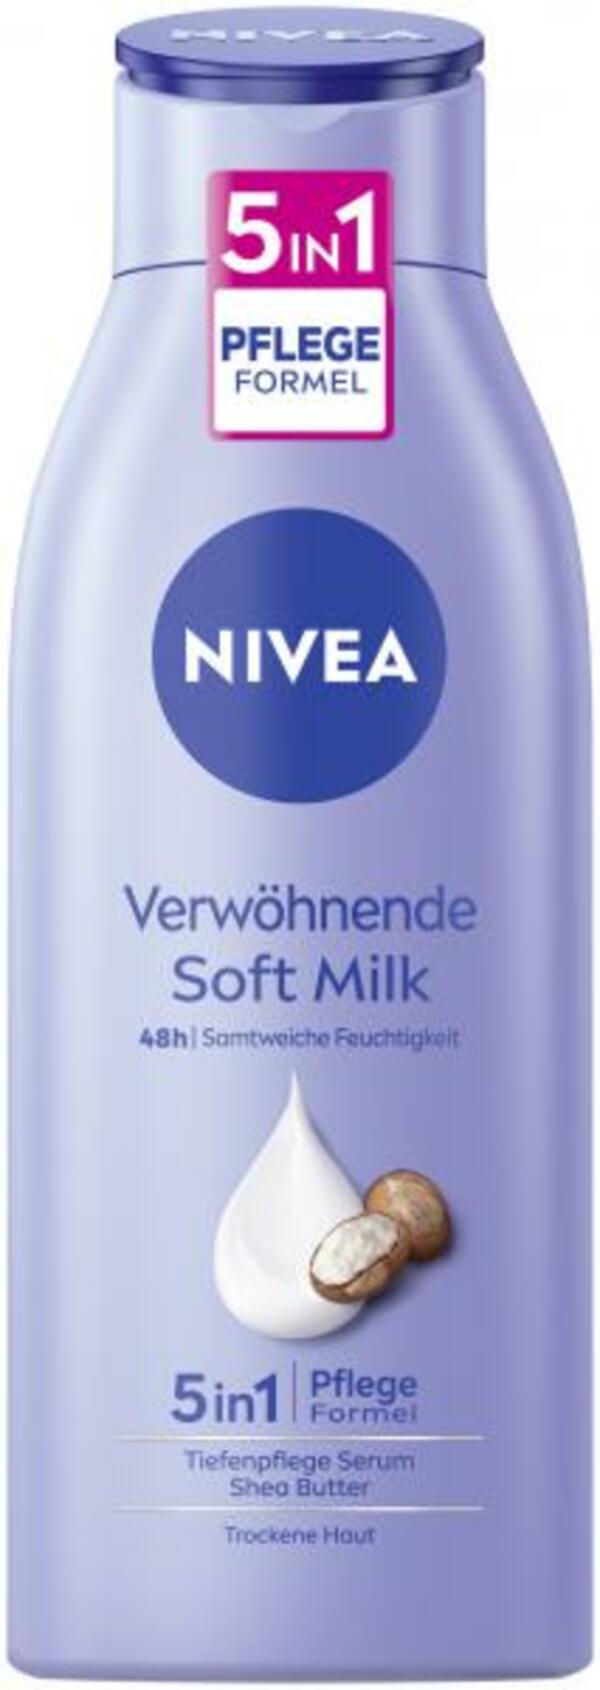 Bild 1 von Nivea Body Verwöhnende Soft Milk